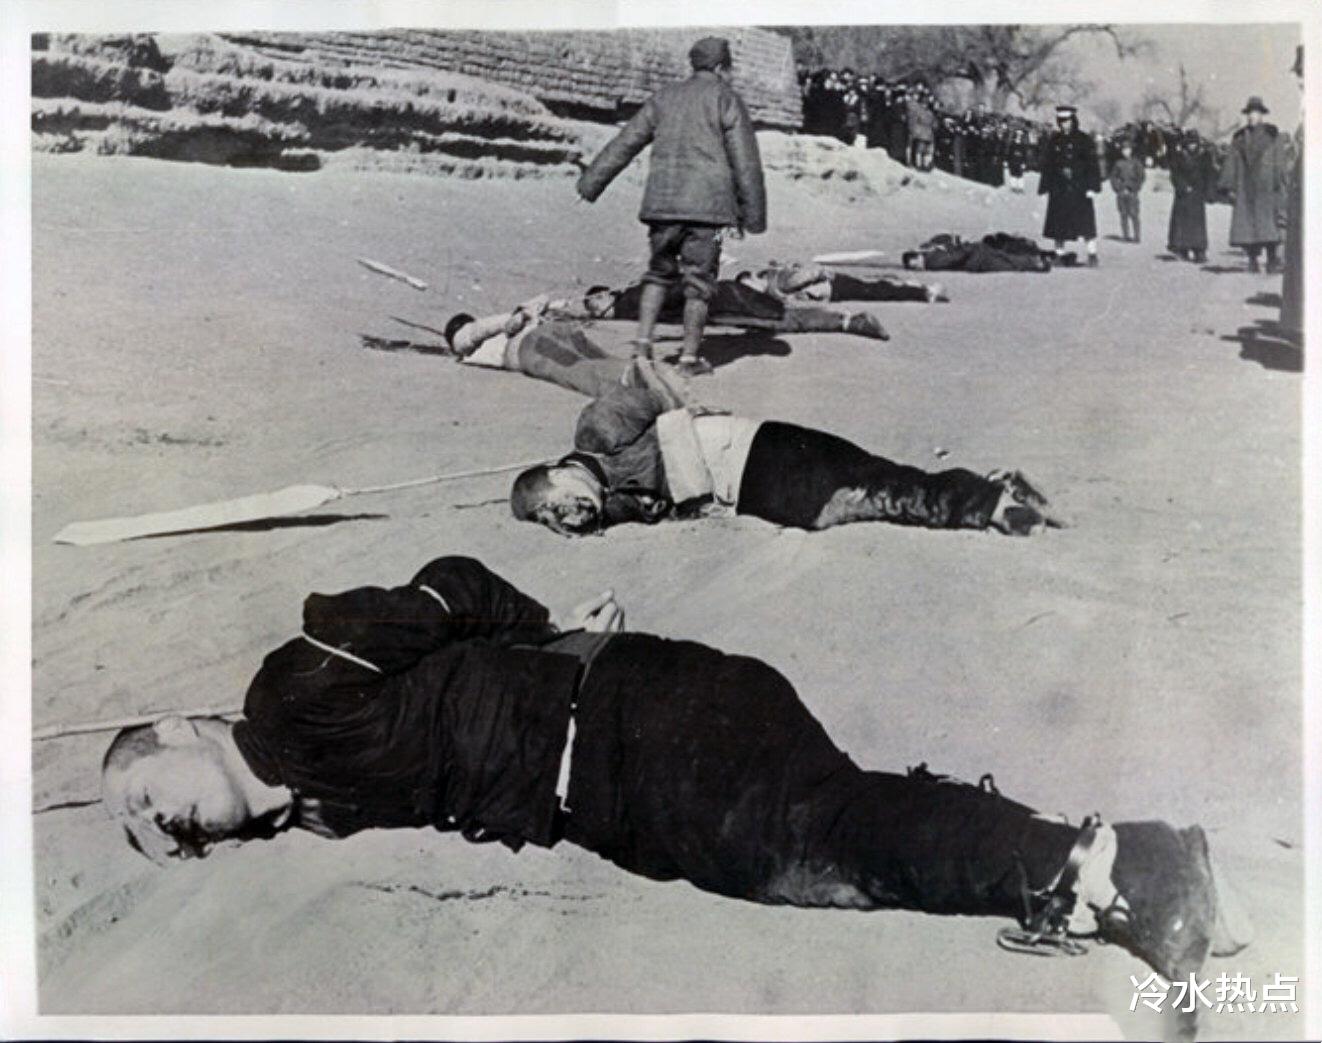 日军 日本战败投降后，庄稼地里却挖出千具少女尸骸，揭露日军残忍行径